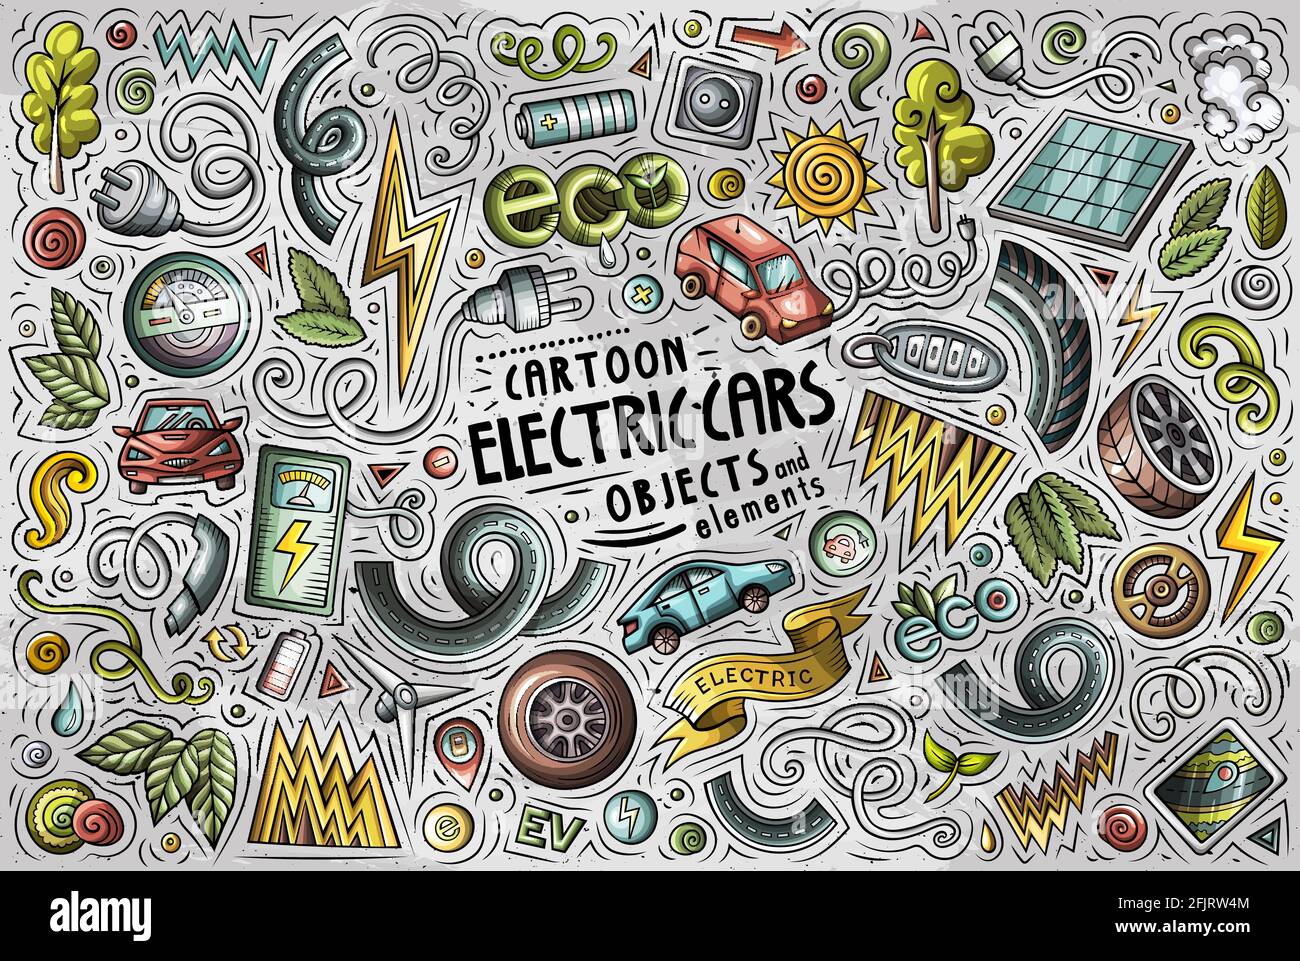 Bunte Vektor Hand gezeichnete Doodle Cartoon Satz von Elektroautos Themen Artikel, Objekte und Symbole Stock Vektor